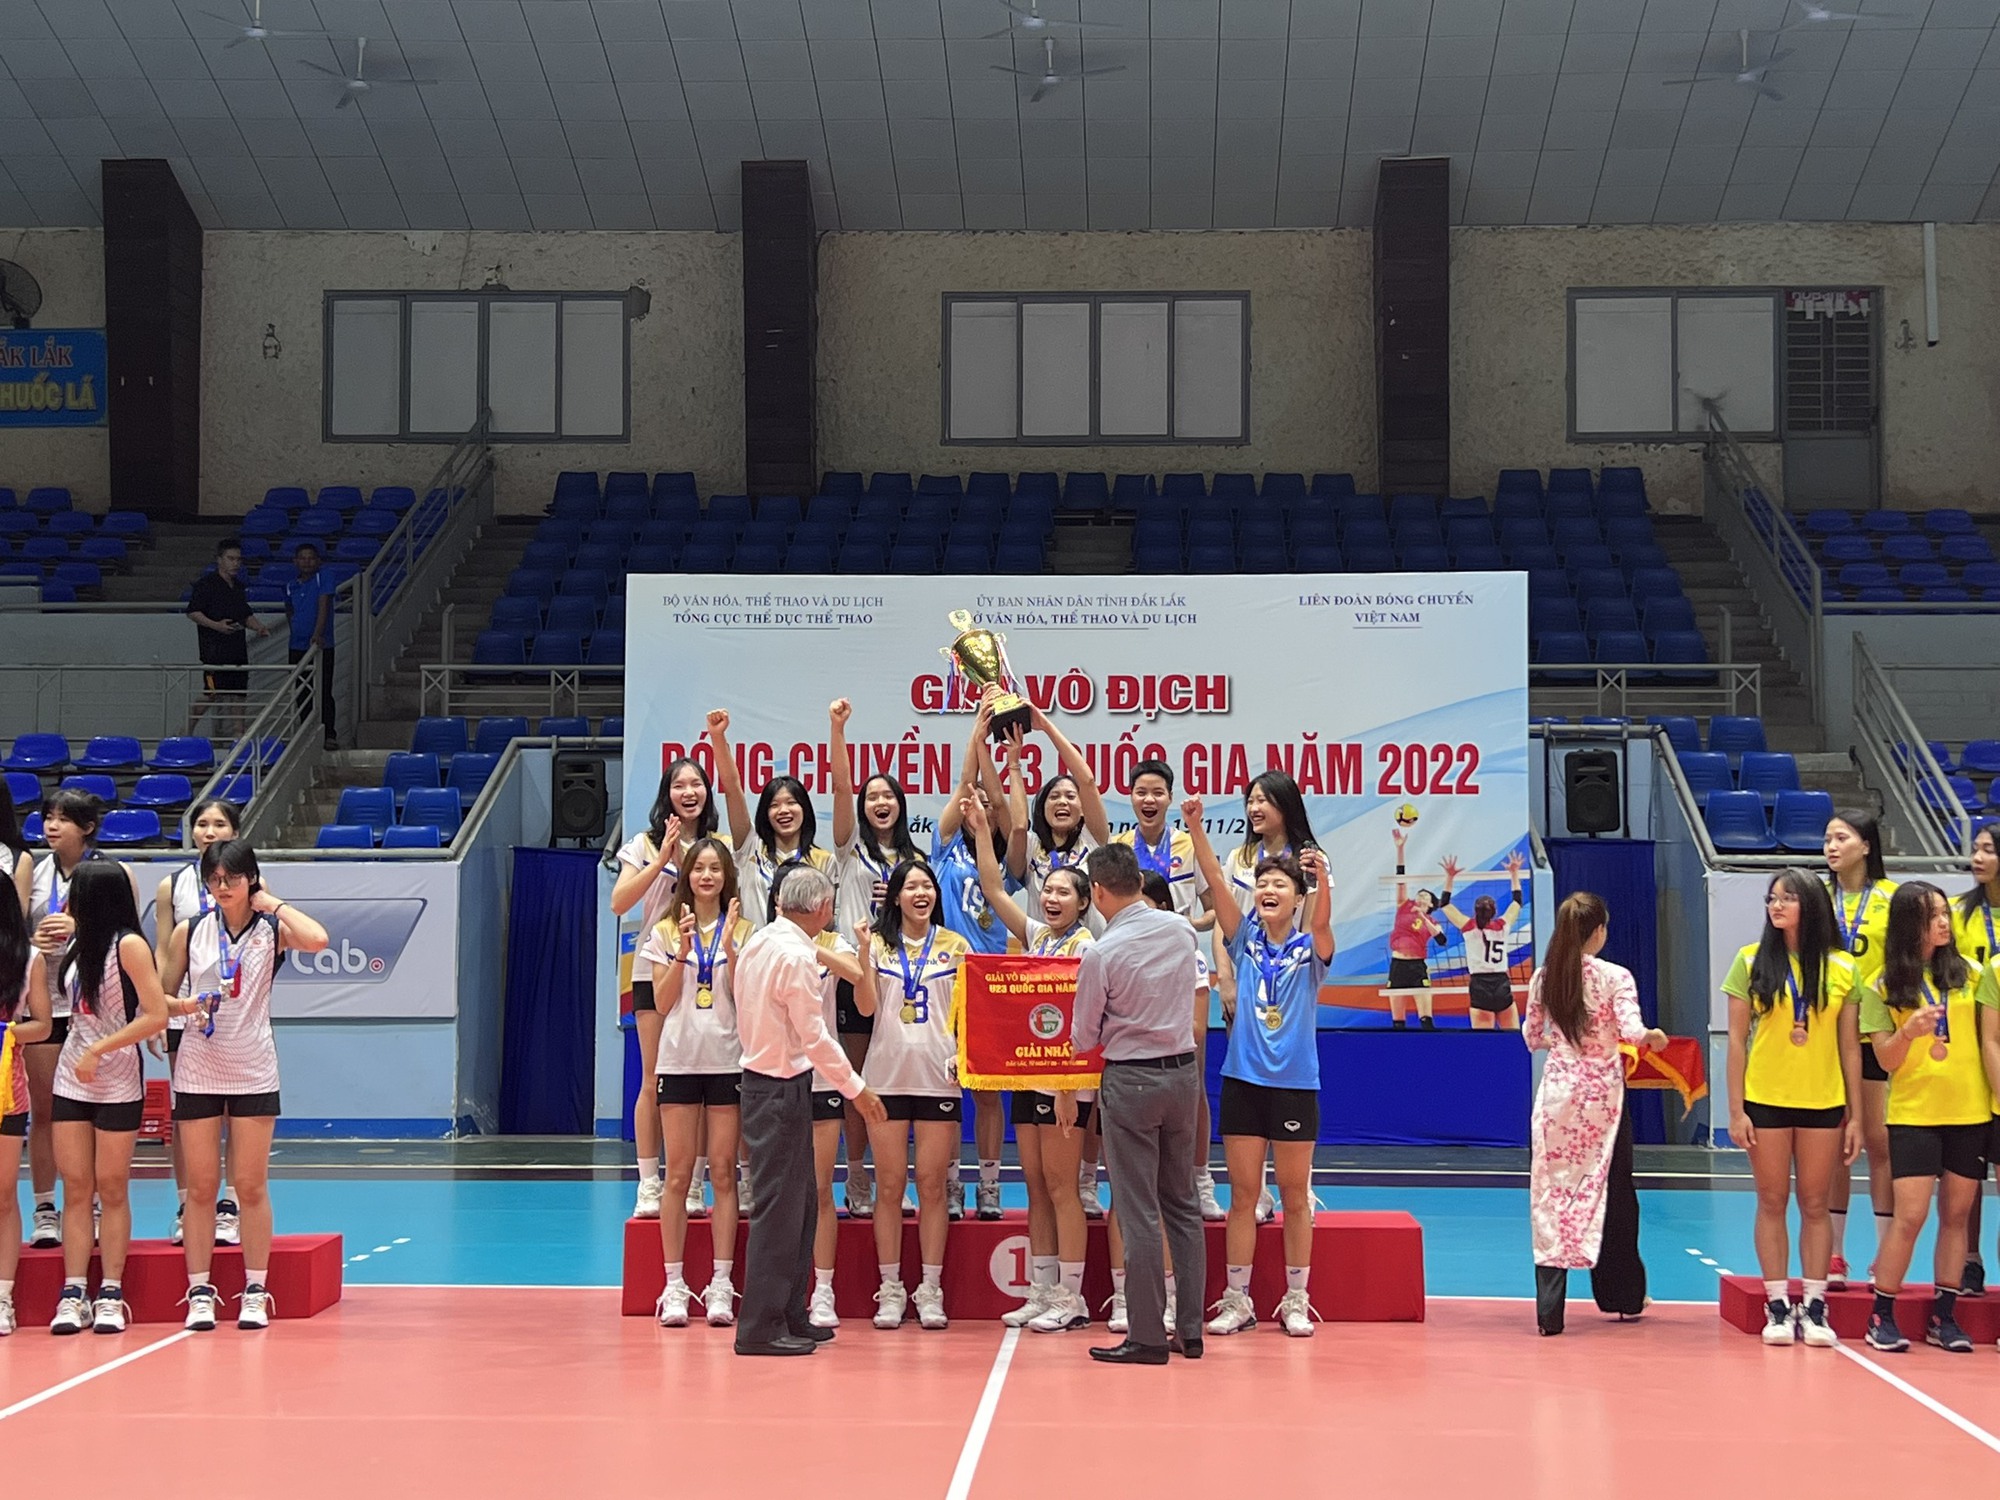 Đội Bóng chuyền nữ VietinBank xuất sắc bảo vệ thành công ngôi vô địch Giải vô địch Bóng chuyền U23 Quốc gia 2022  - Ảnh 3.